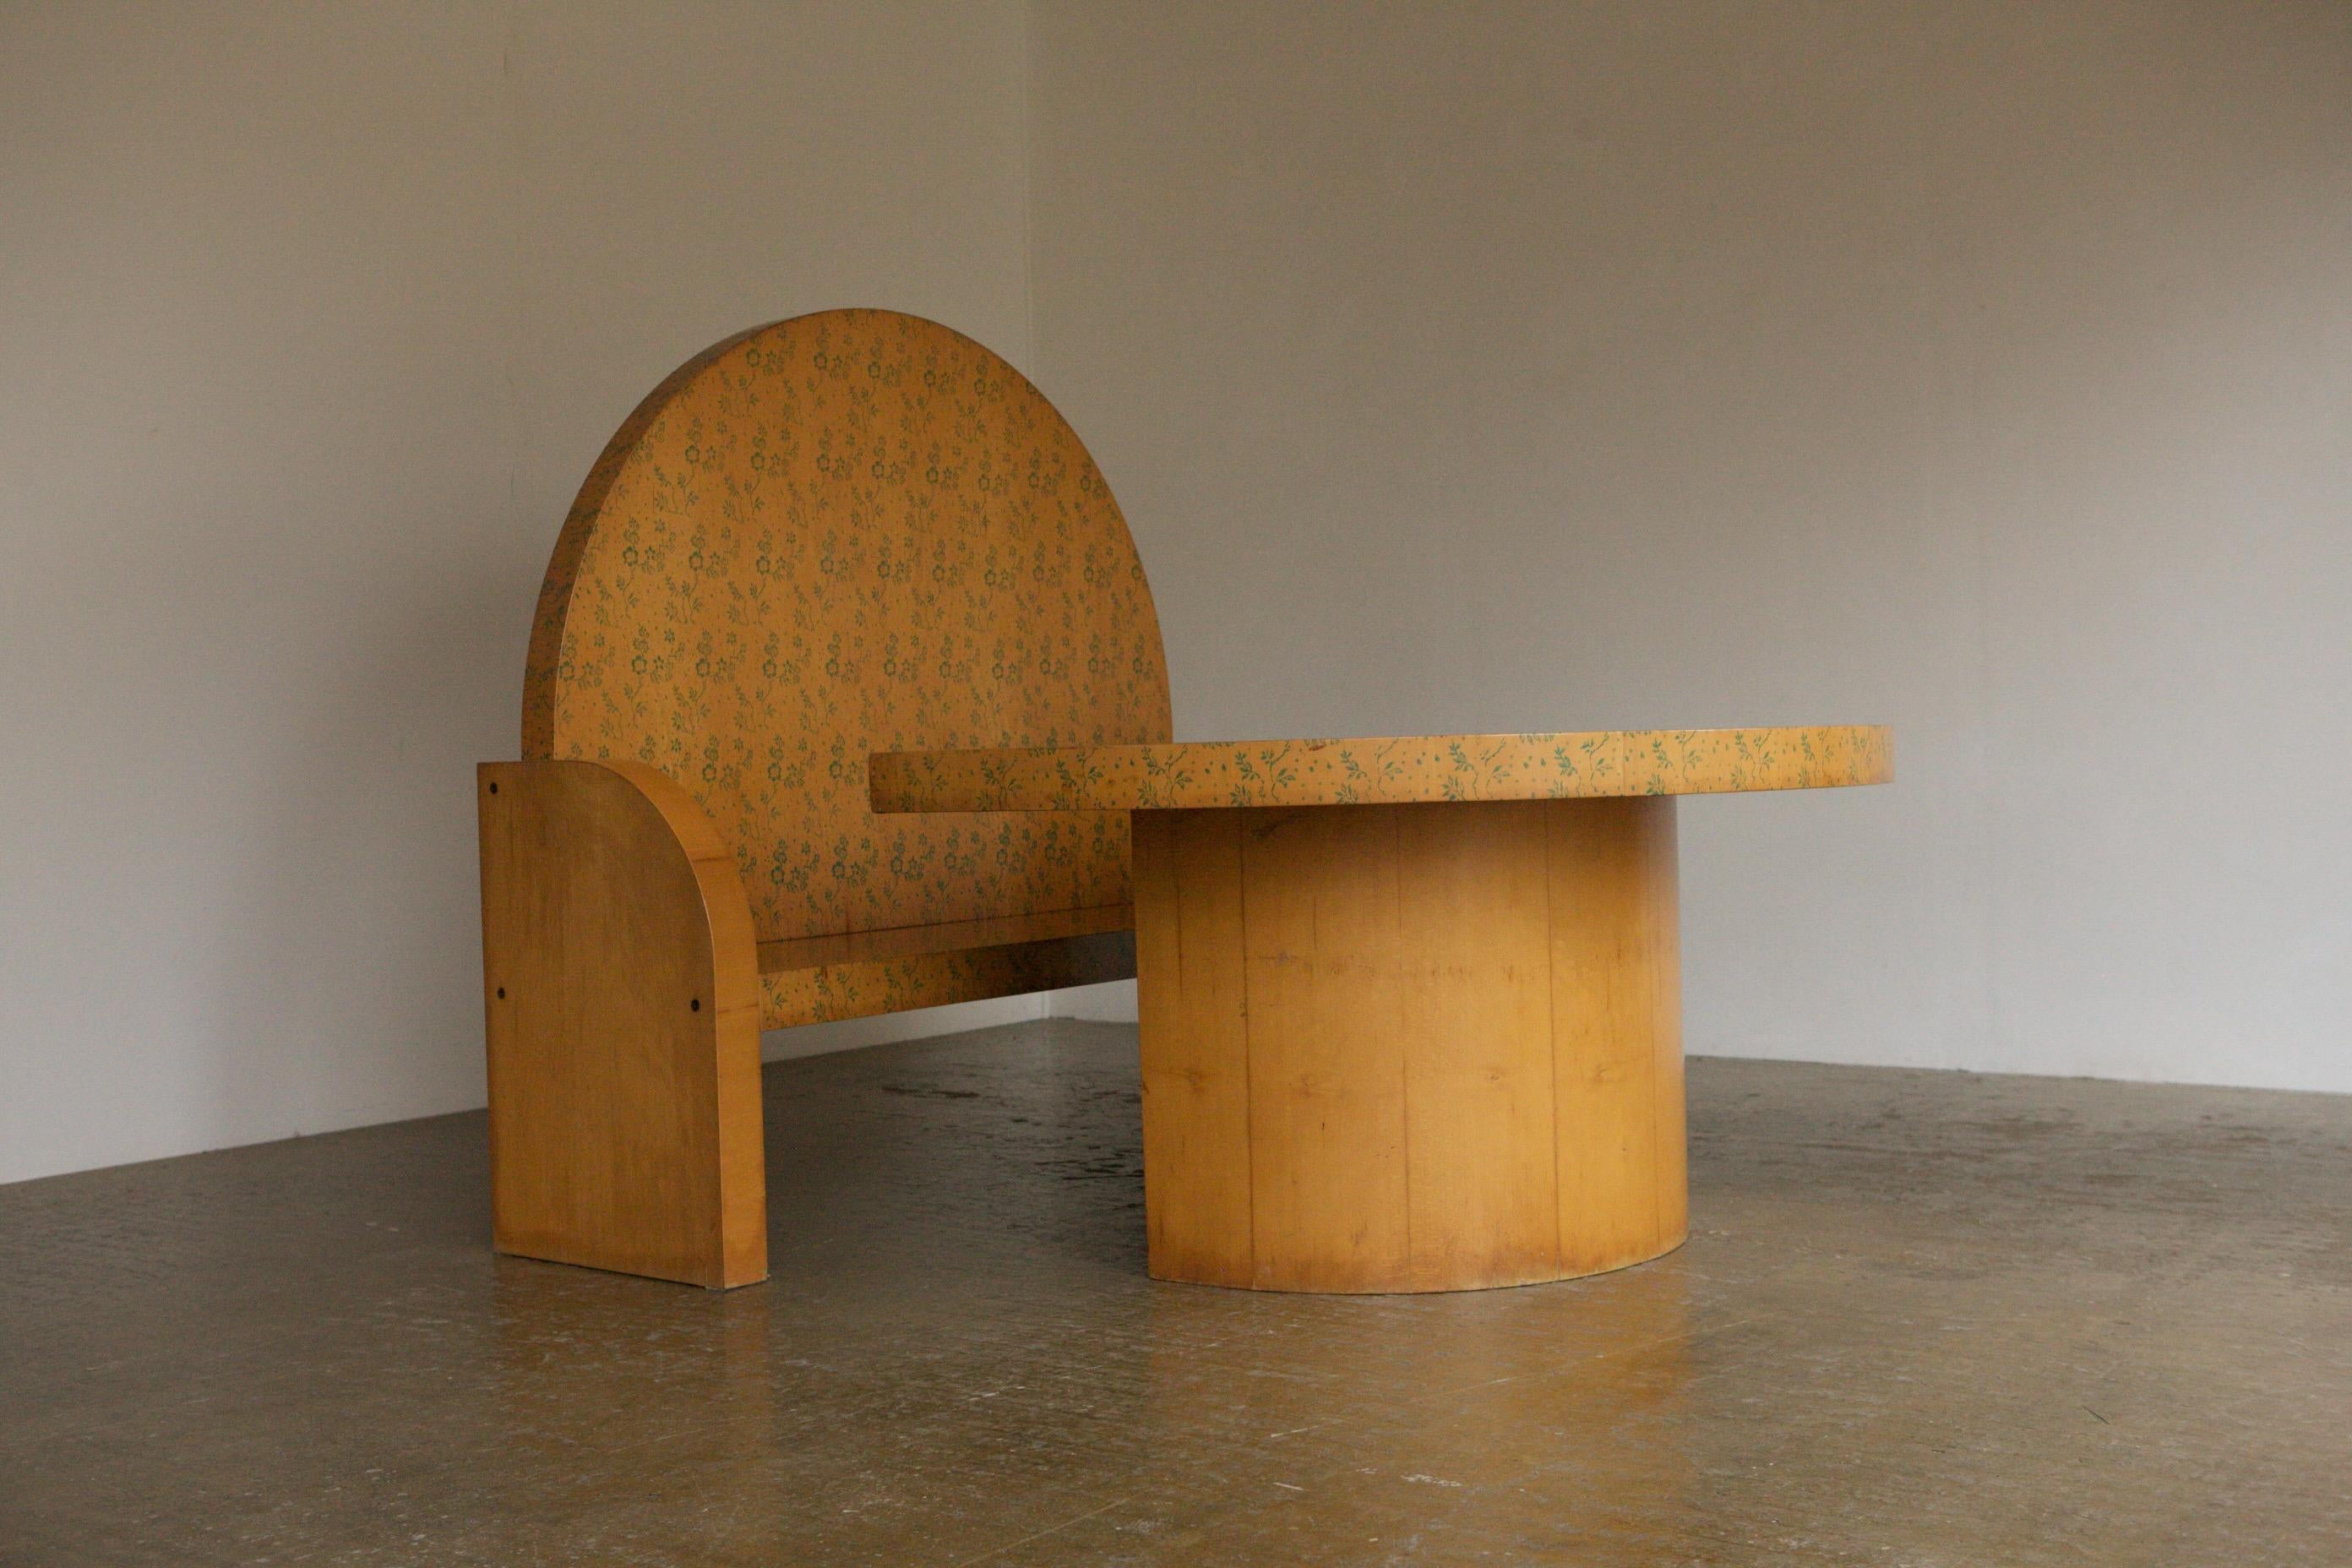 Une superbe pièce du design des années 1970 de la légende italienne Gianni Ruffi. Cet ensemble table et banc a un concept très astucieux. Tout a été exagéré, de l'épaisseur du contreplaqué de hêtre au dossier haut du banc, en passant par le motif